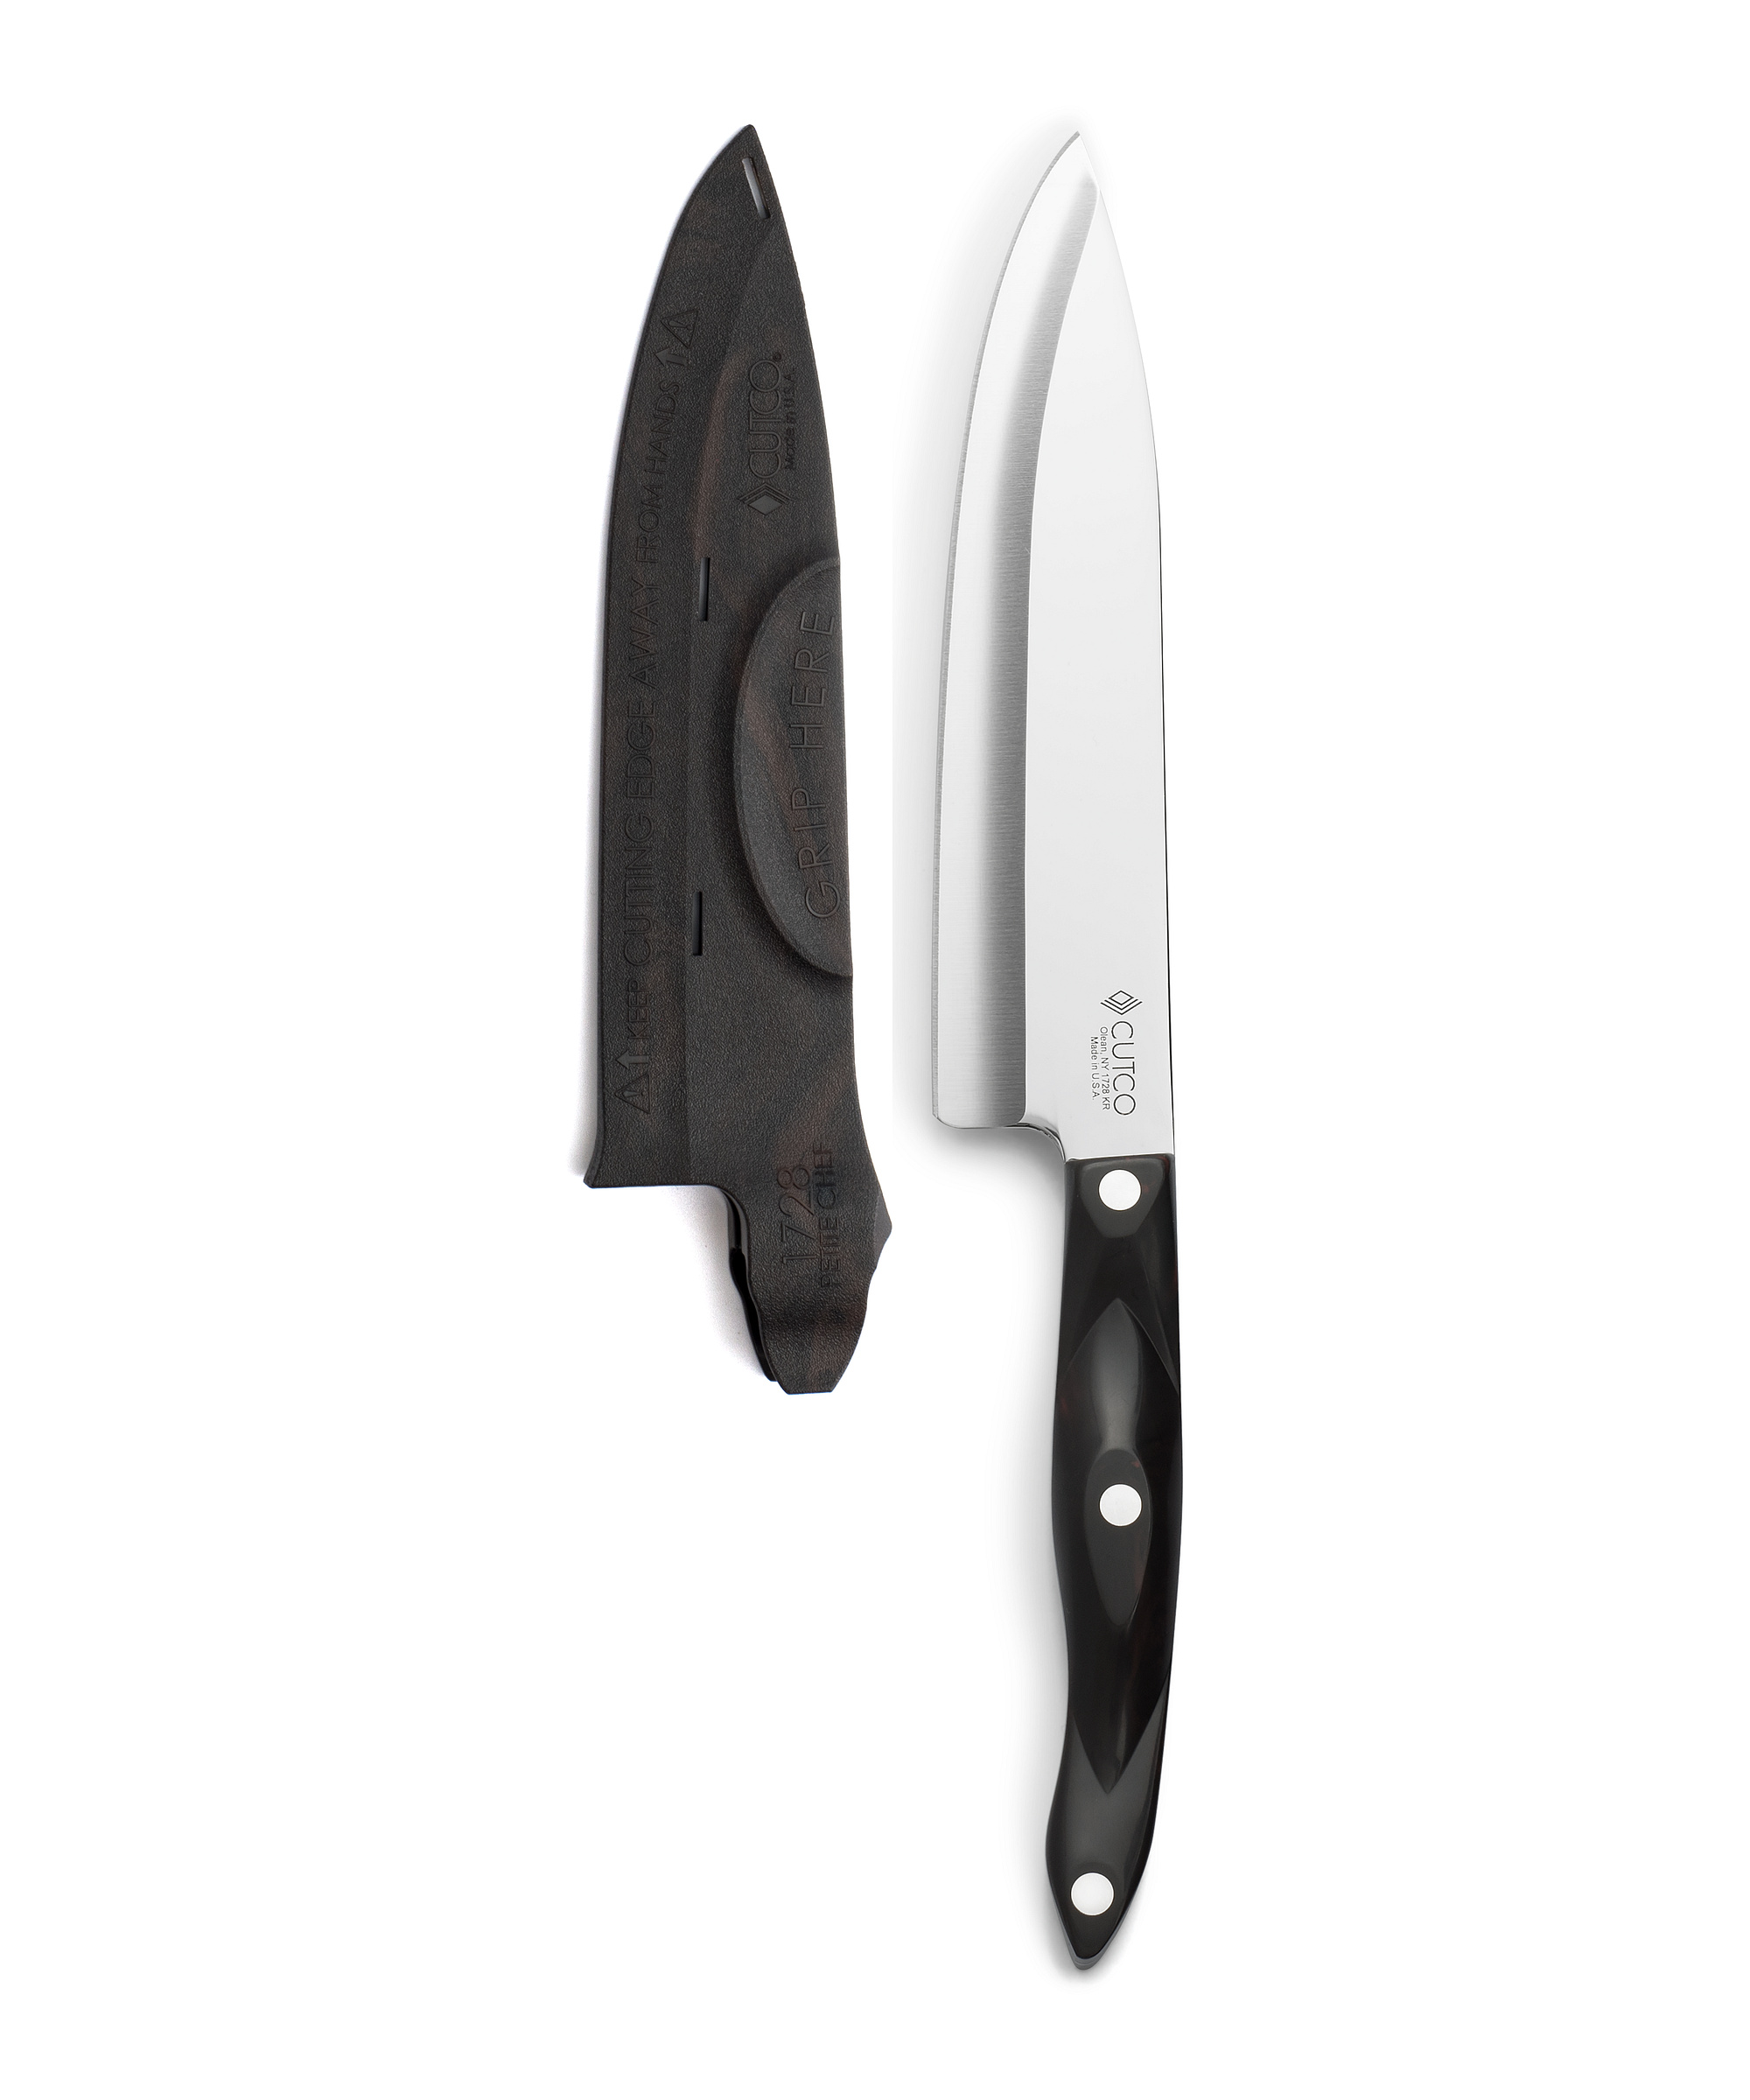 Chef Knives by Cutco